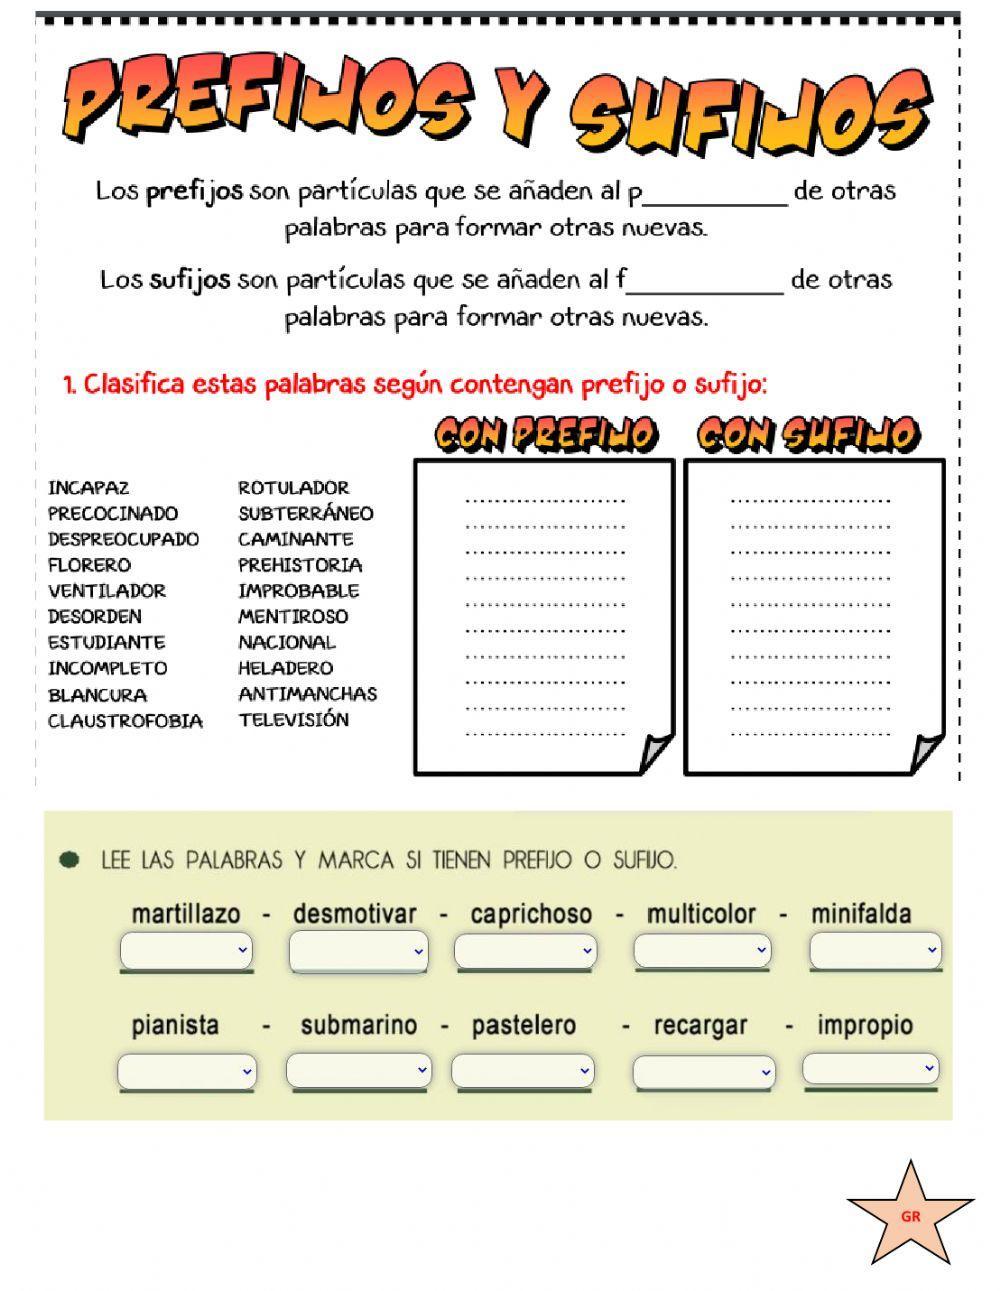 Prefixes and Suffixes in SPANISH, Prefijos y Sufijos